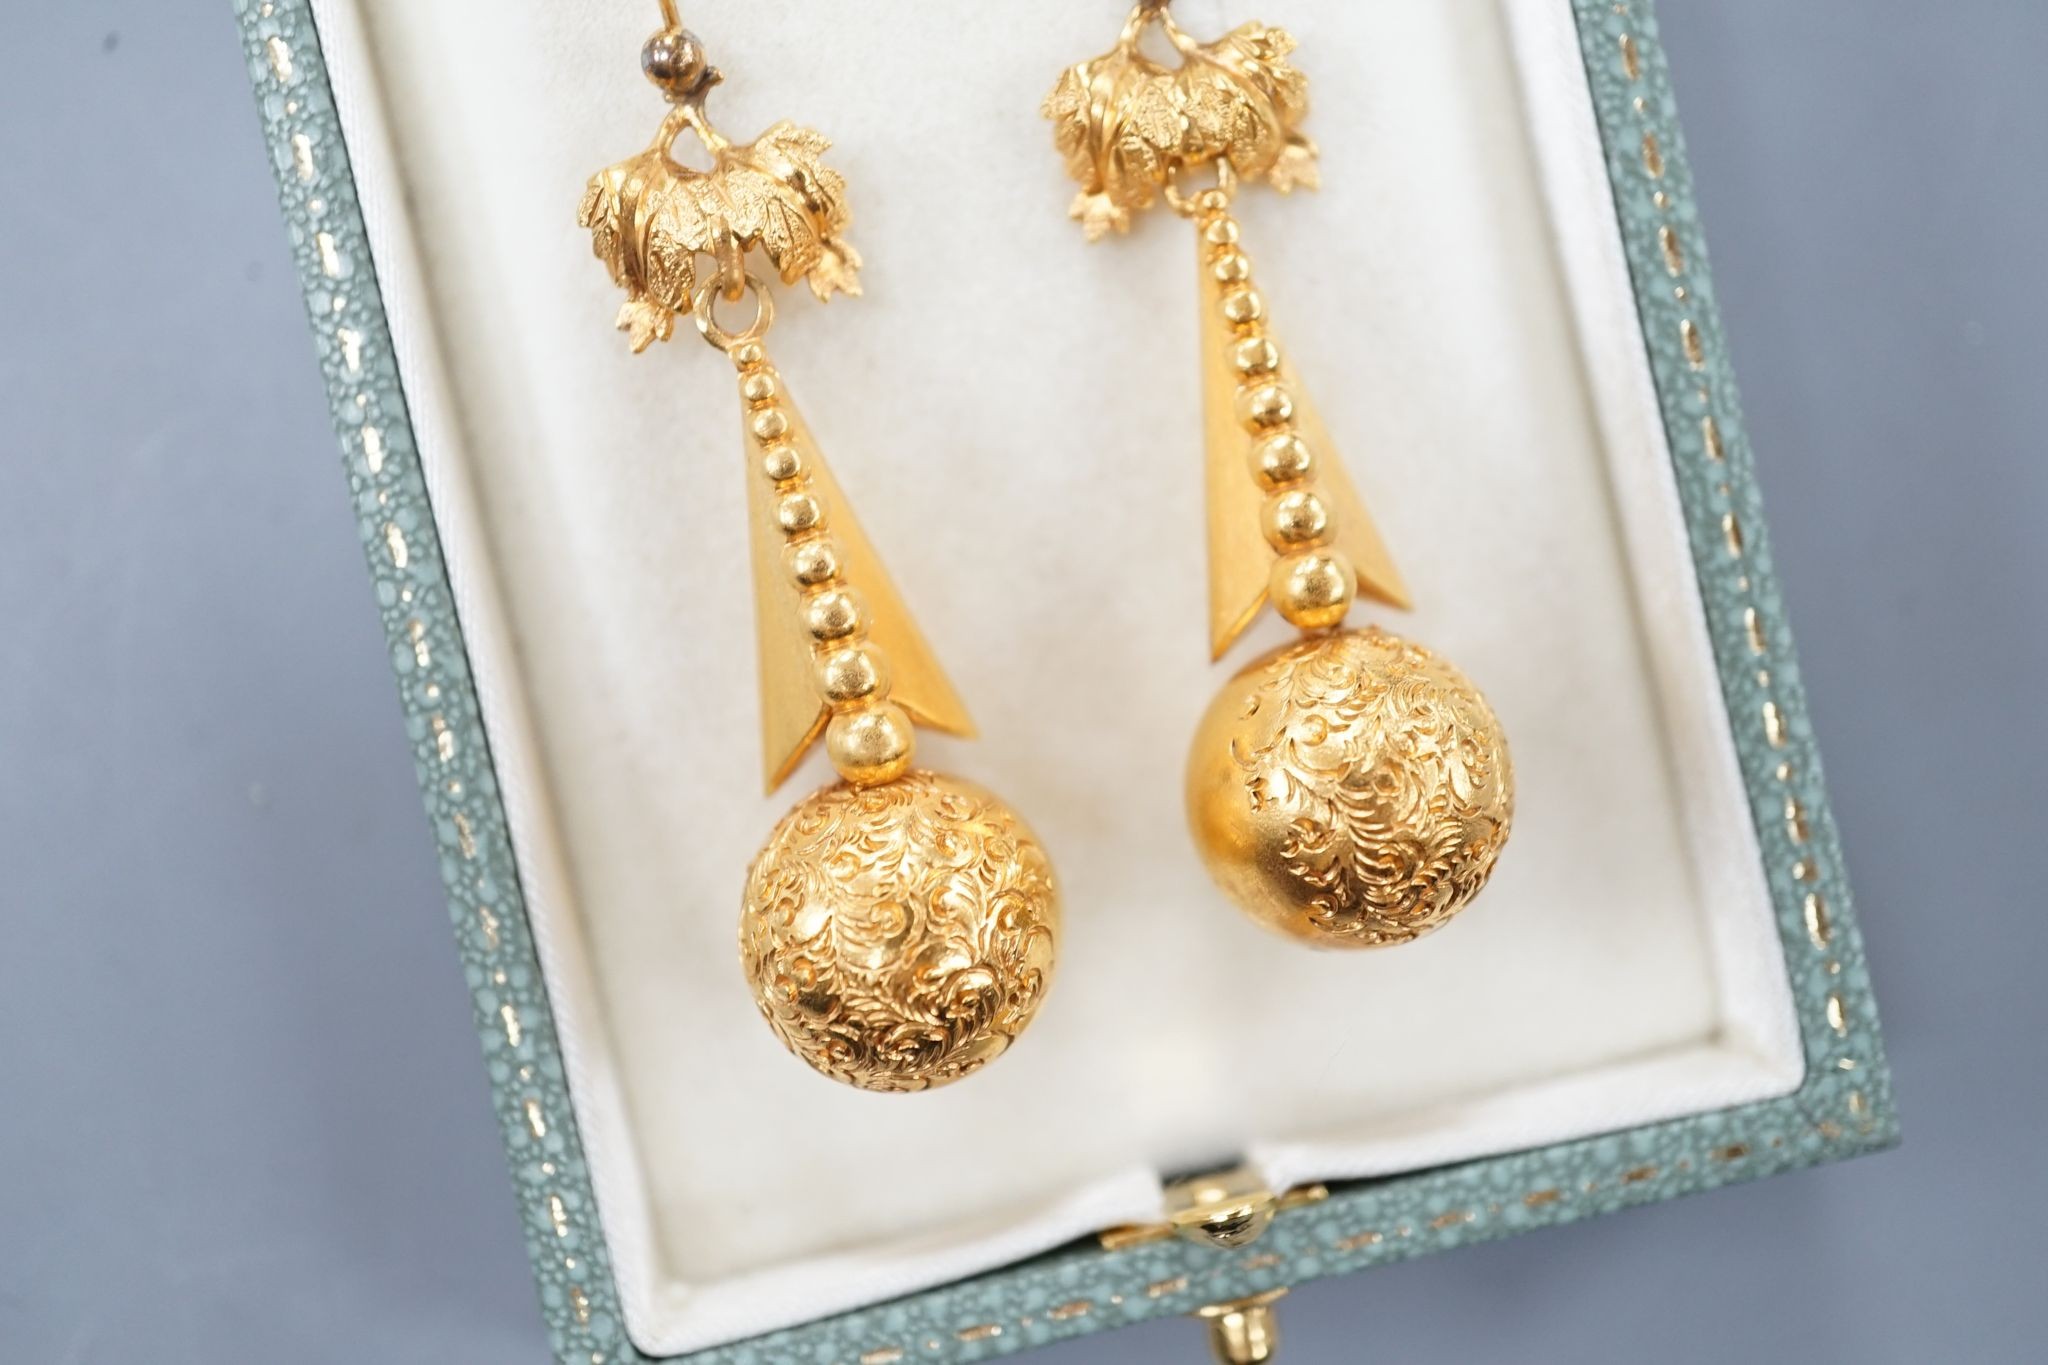 A pair of yellow metal drop earrings, 43mm